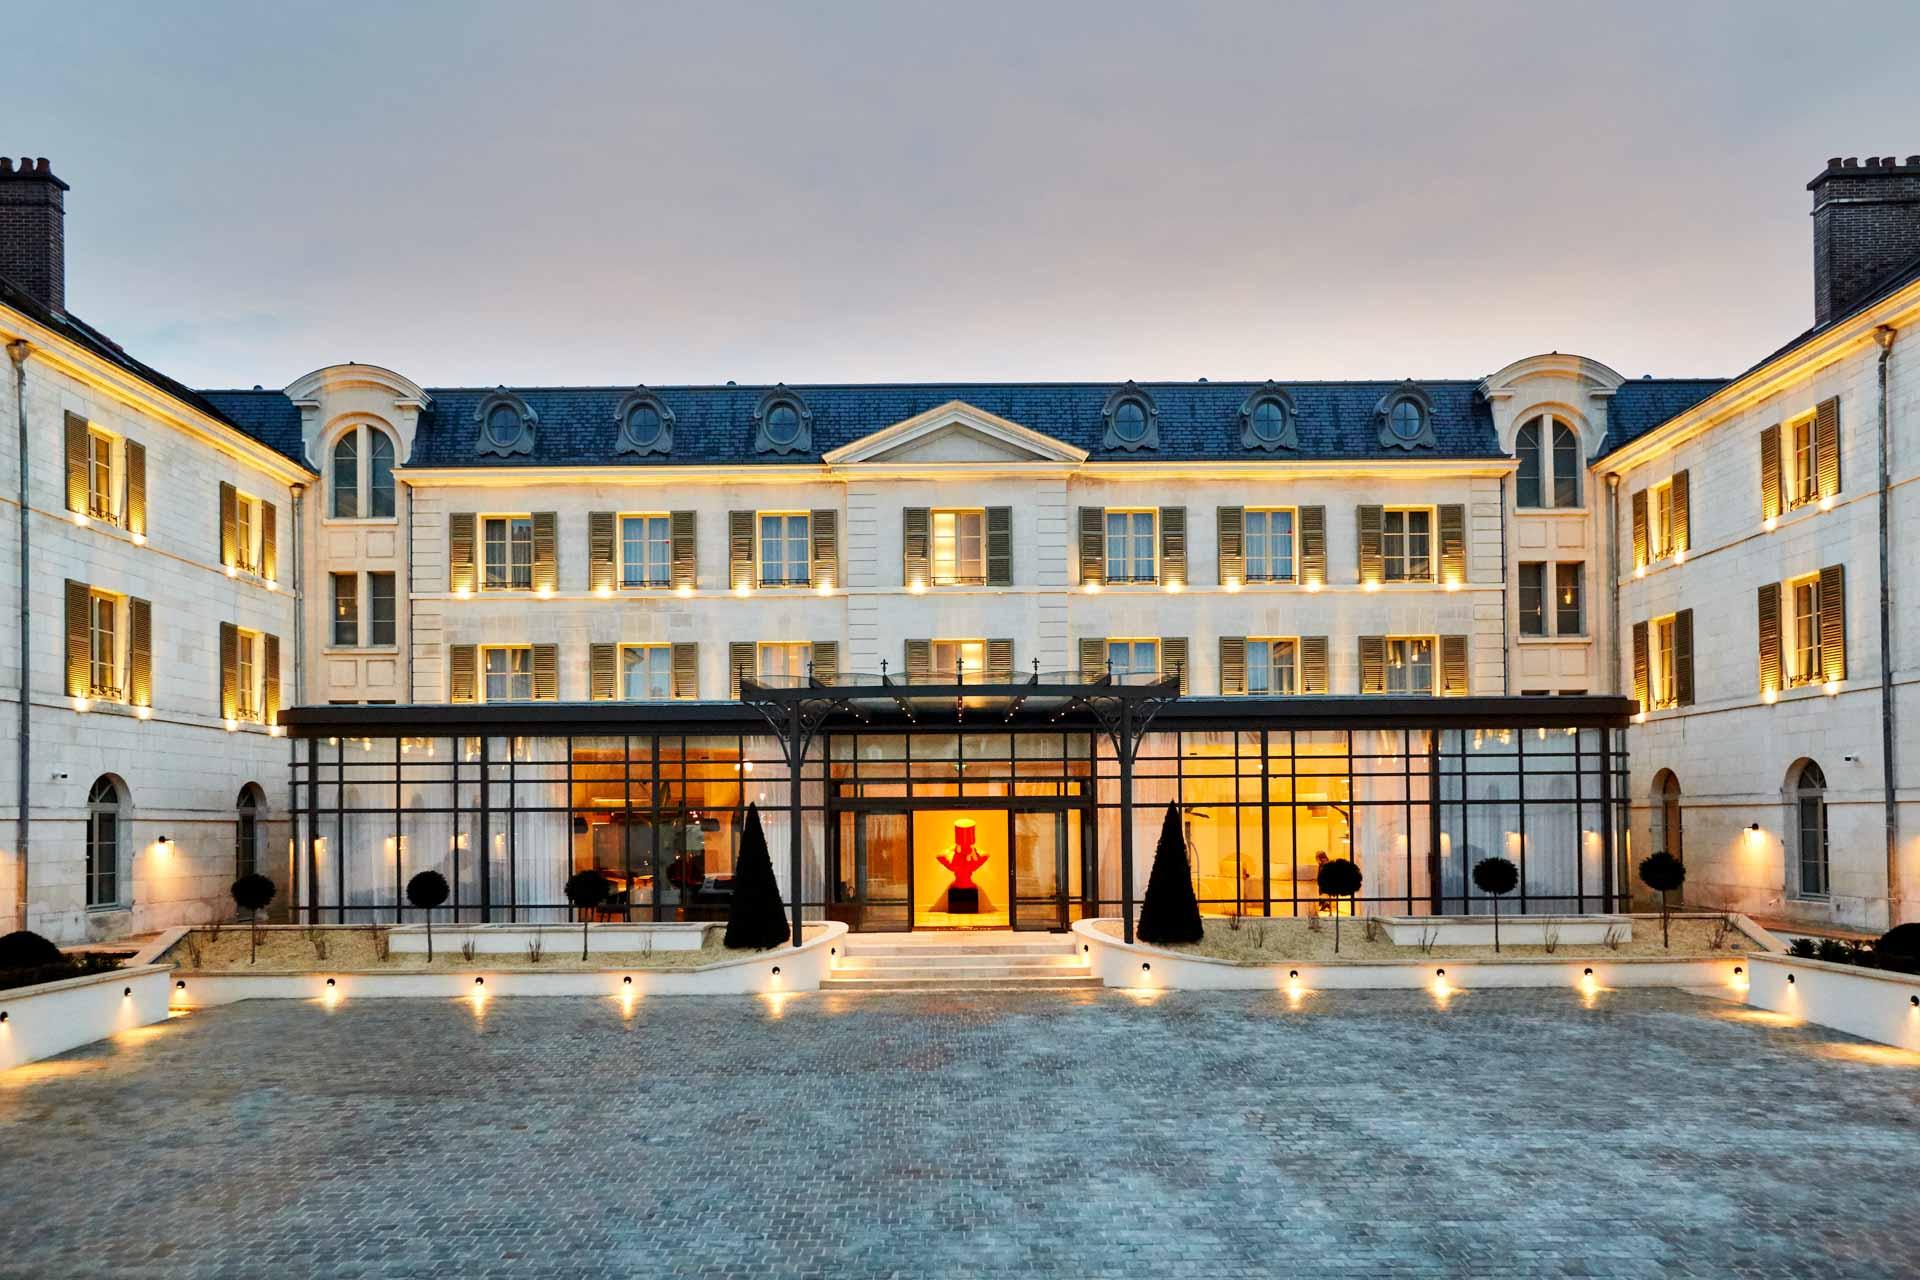 L’élégant bâtiment qui abrite l’hôtel © Thierry Sauvage – La Licorne